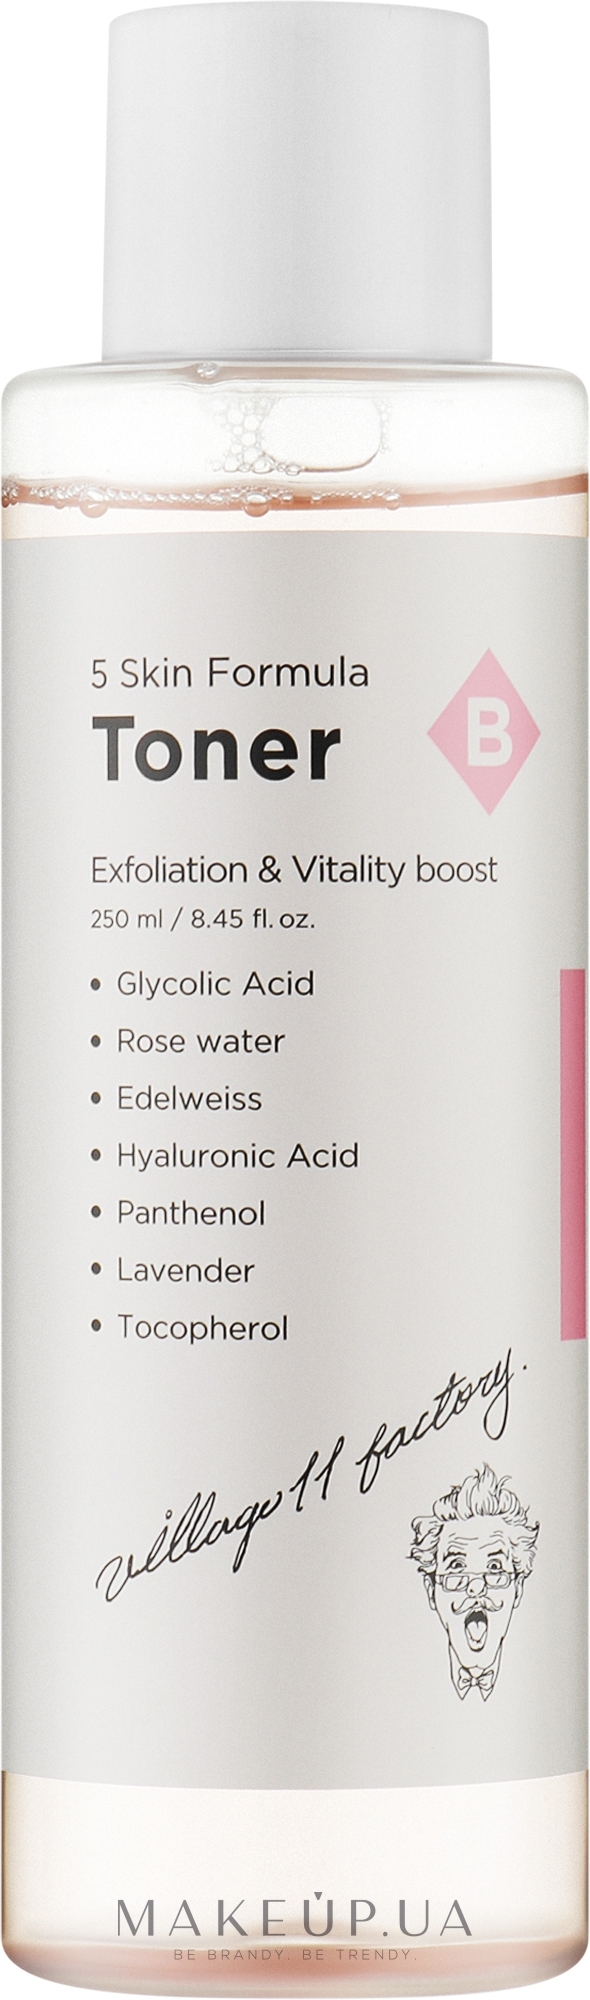 Відлущувальний тонер для обличчя - Village 11 Factory Skin Formula Toner B Exfoliation & Vitality — фото 250ml